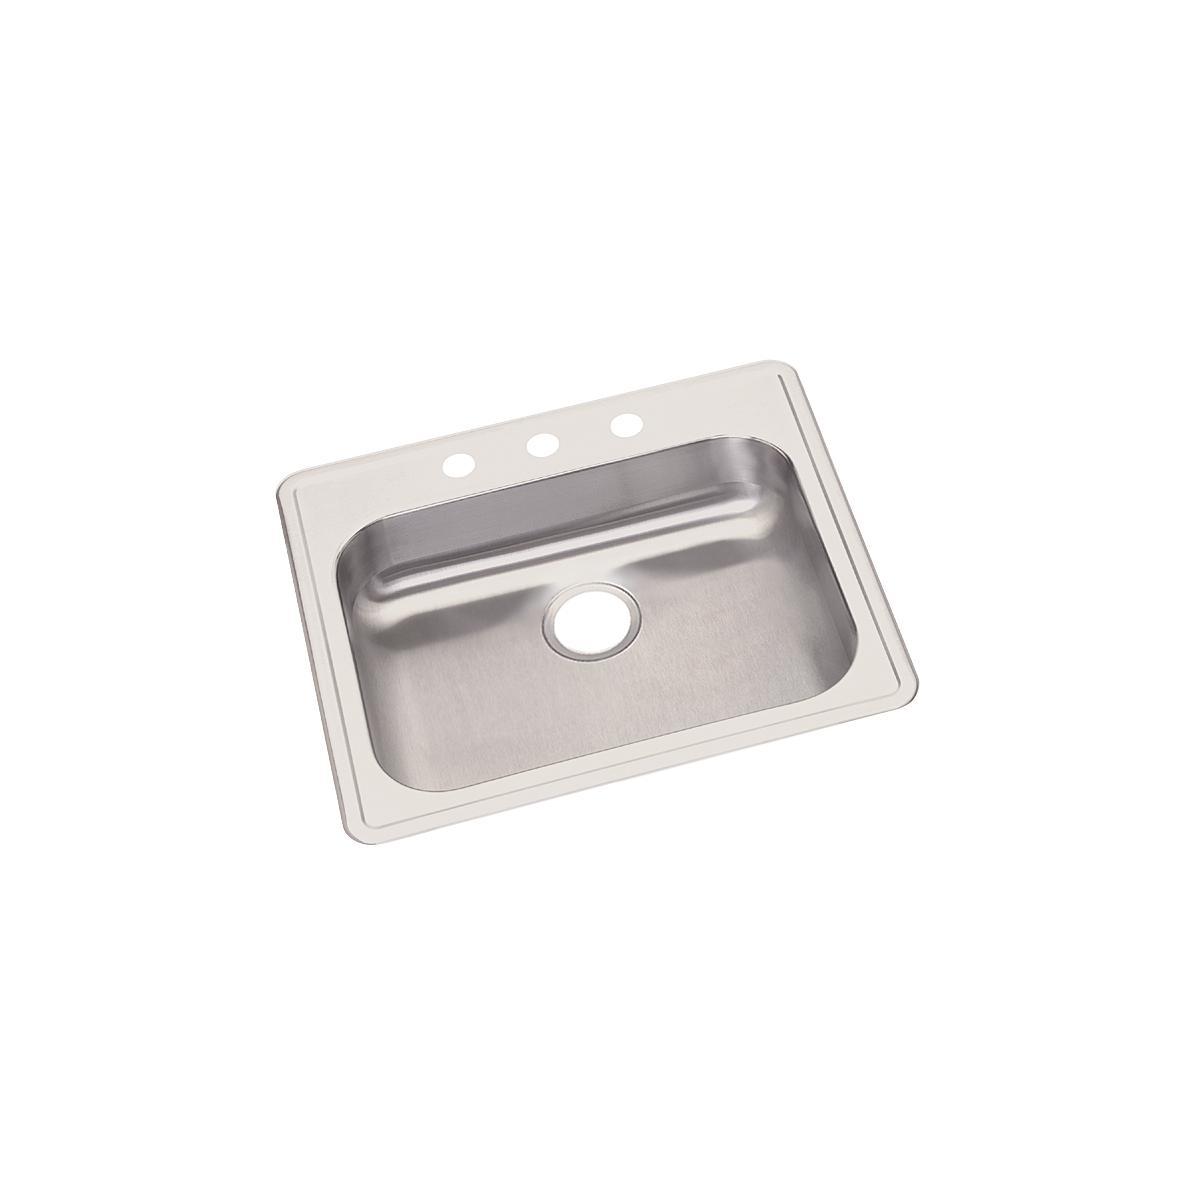 Elkay GE125212 Dayton 25 Stainless Steel Kitchen Sink, Single Bowl, Satin